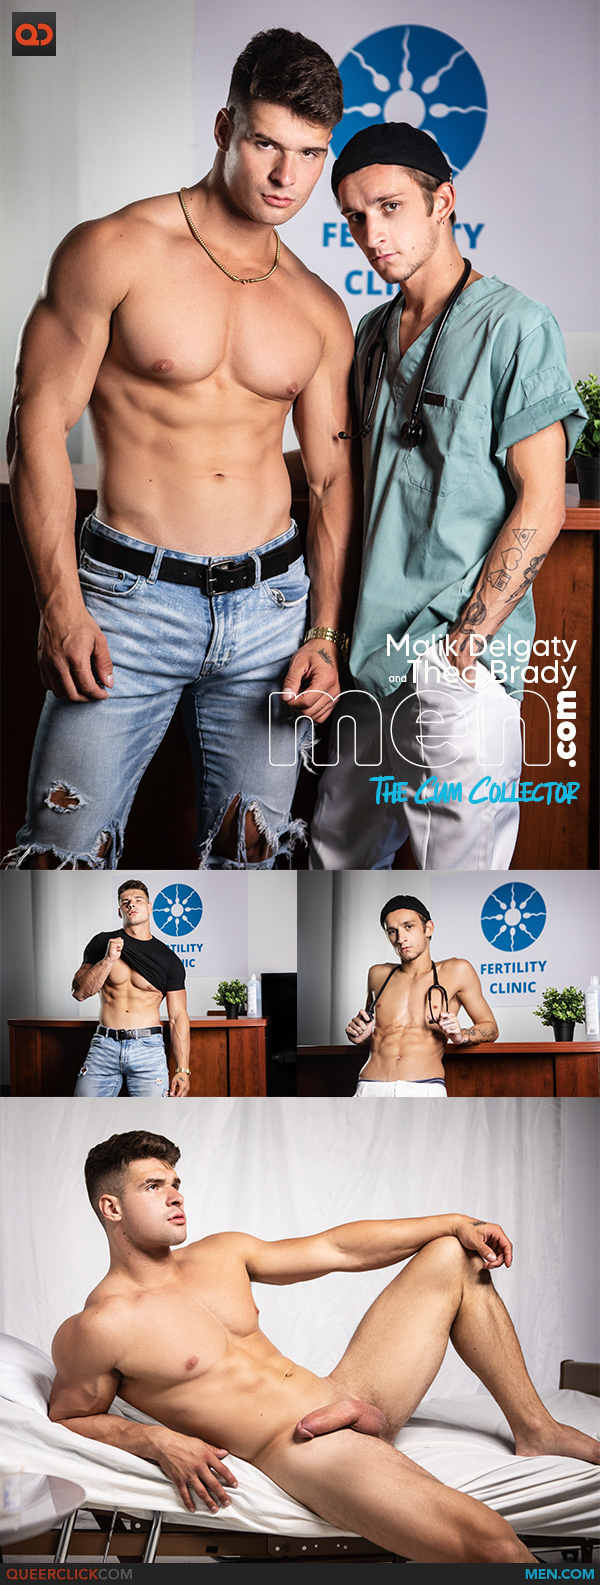 Men.com: Malik Delgaty and Theo Brady